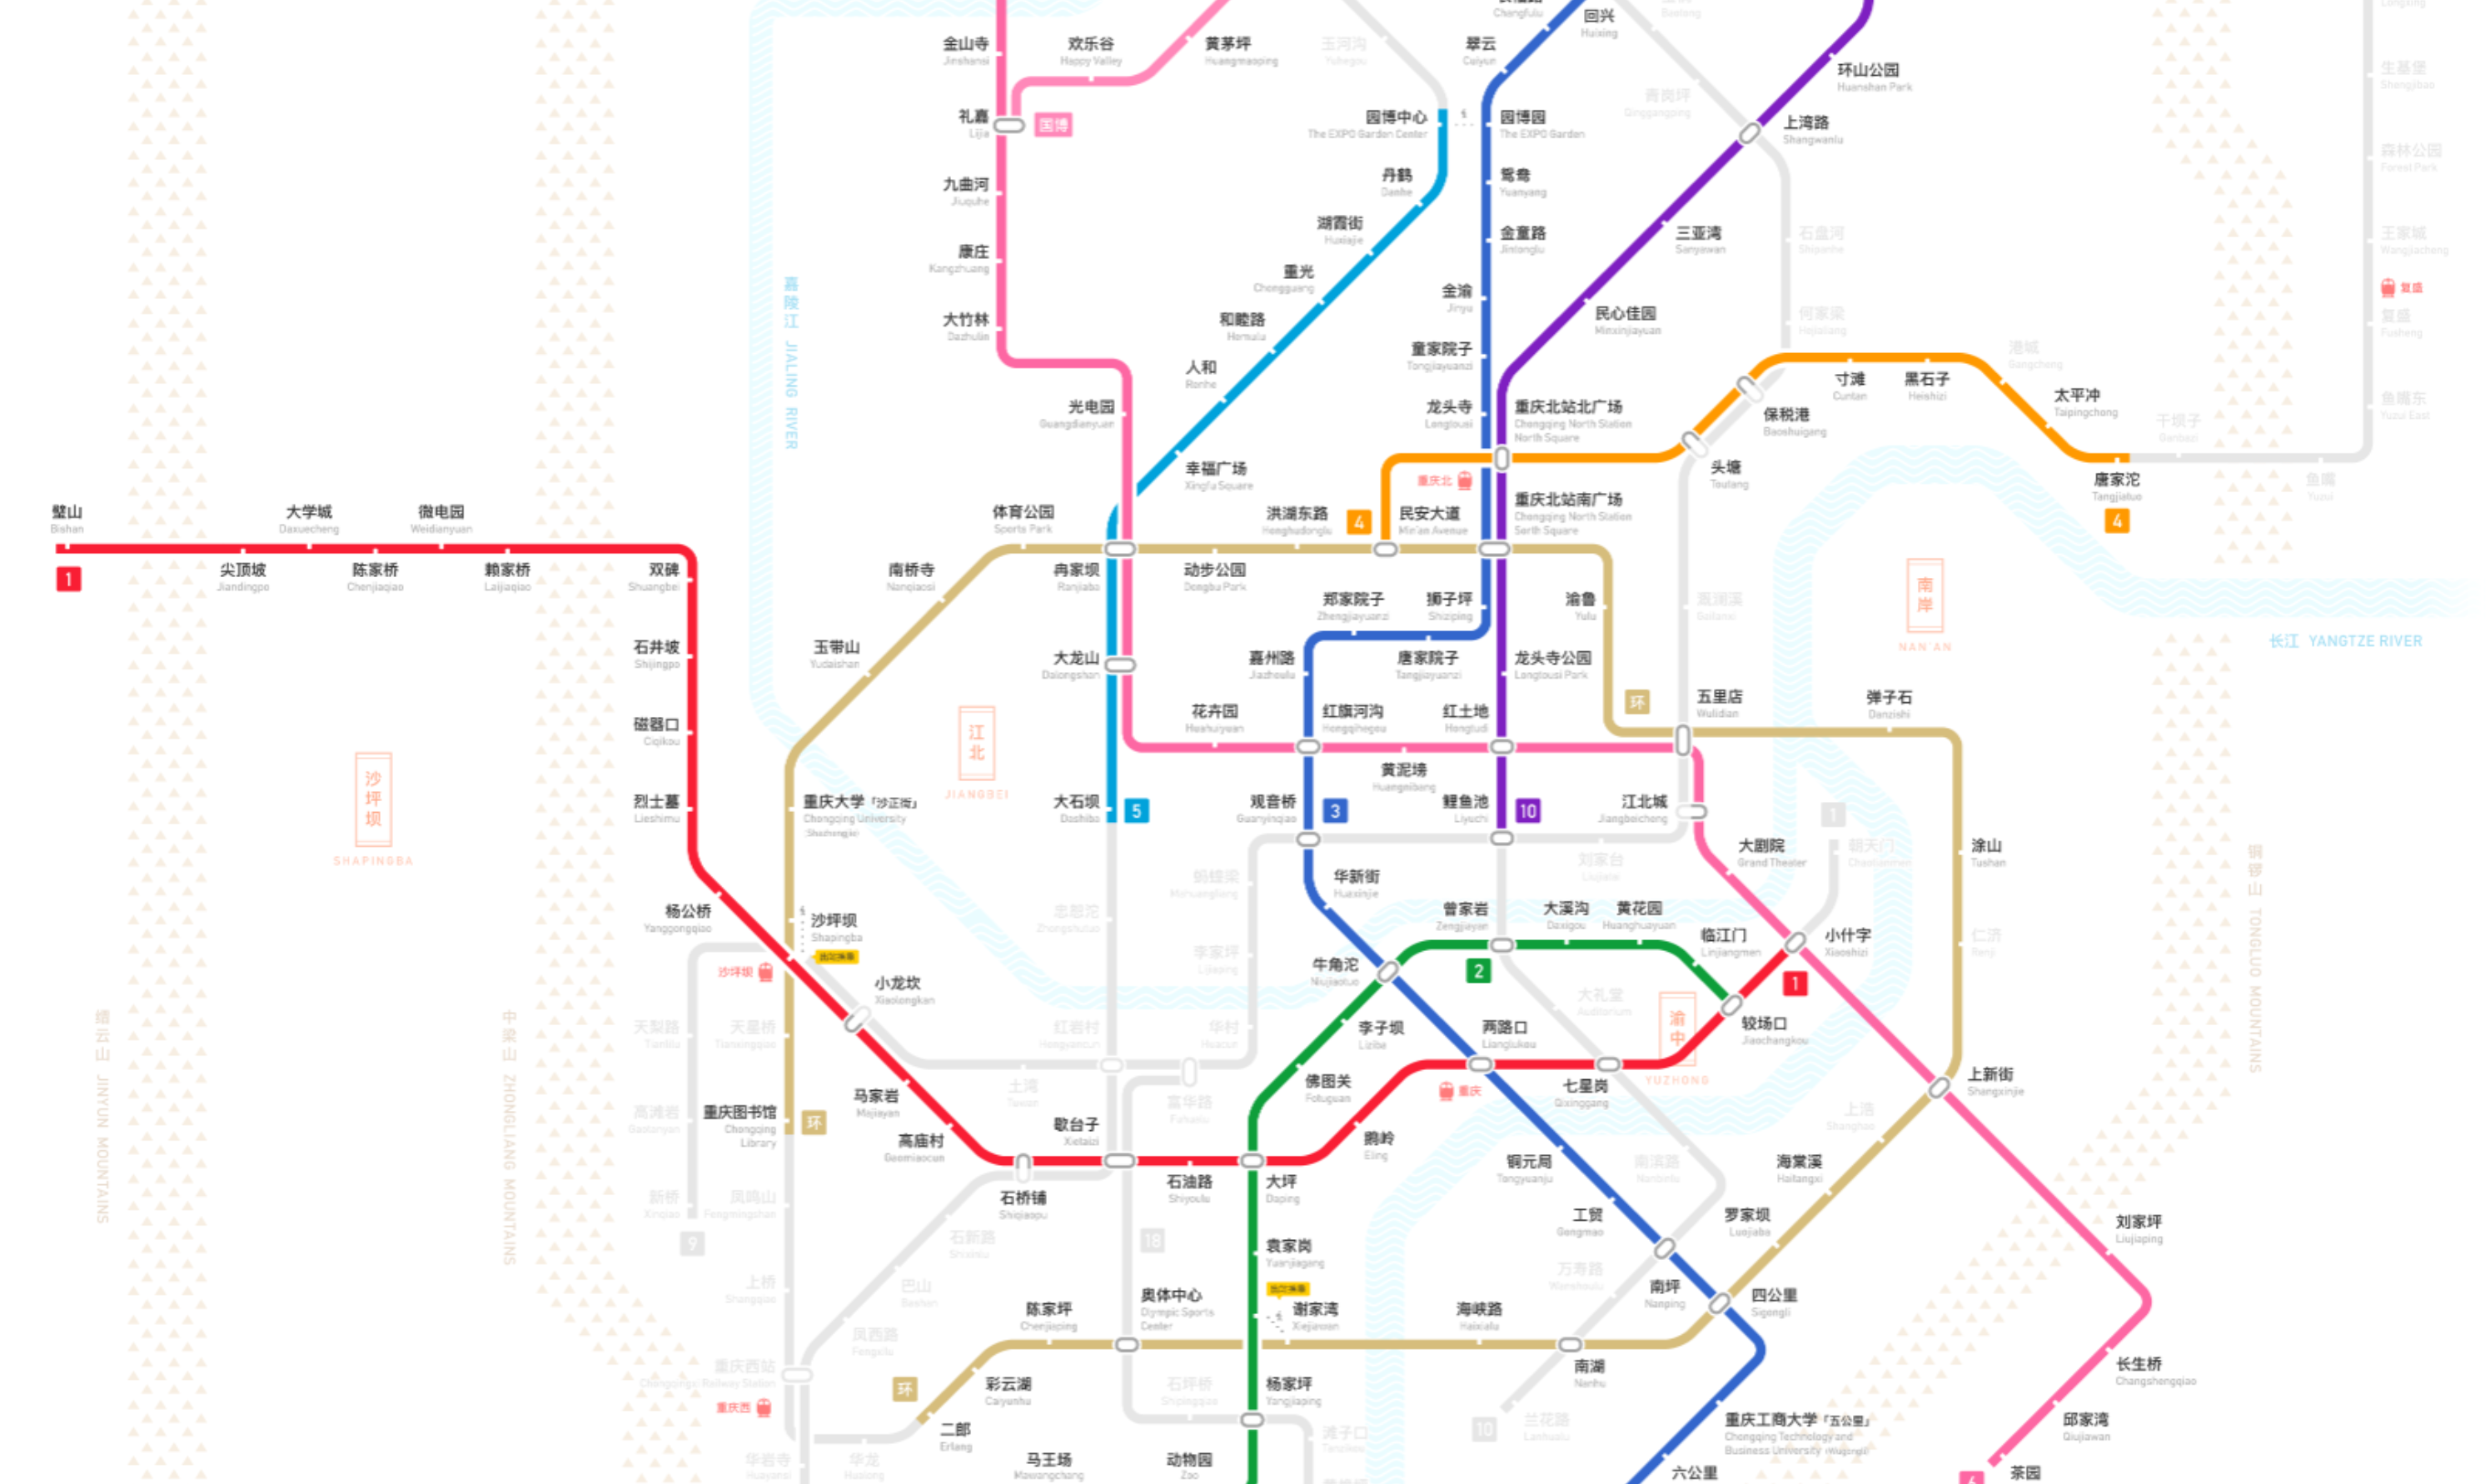 地铁线路图 2020年图片